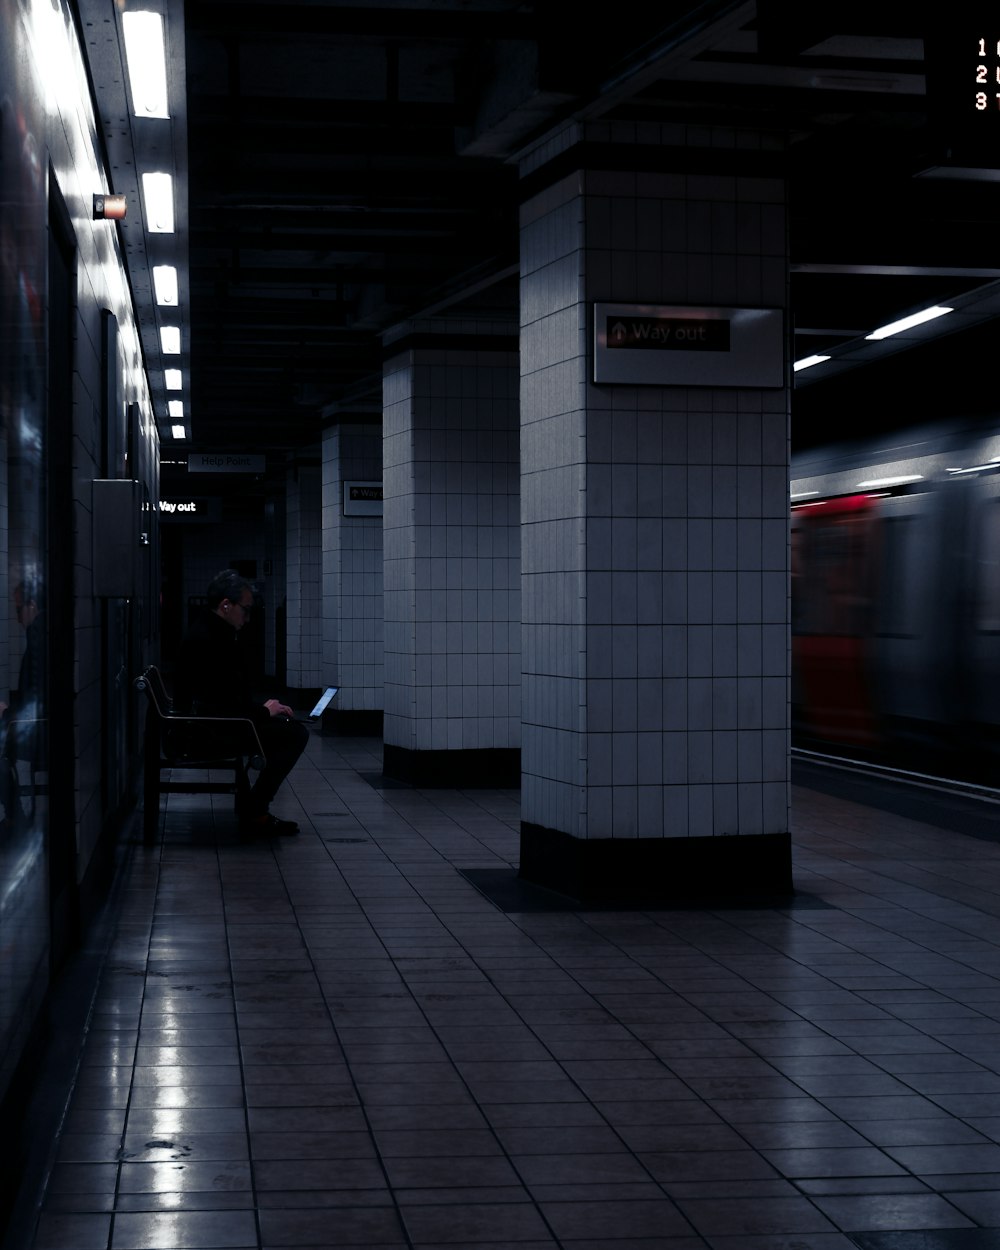 Un uomo seduto su una panchina in una stazione della metropolitana